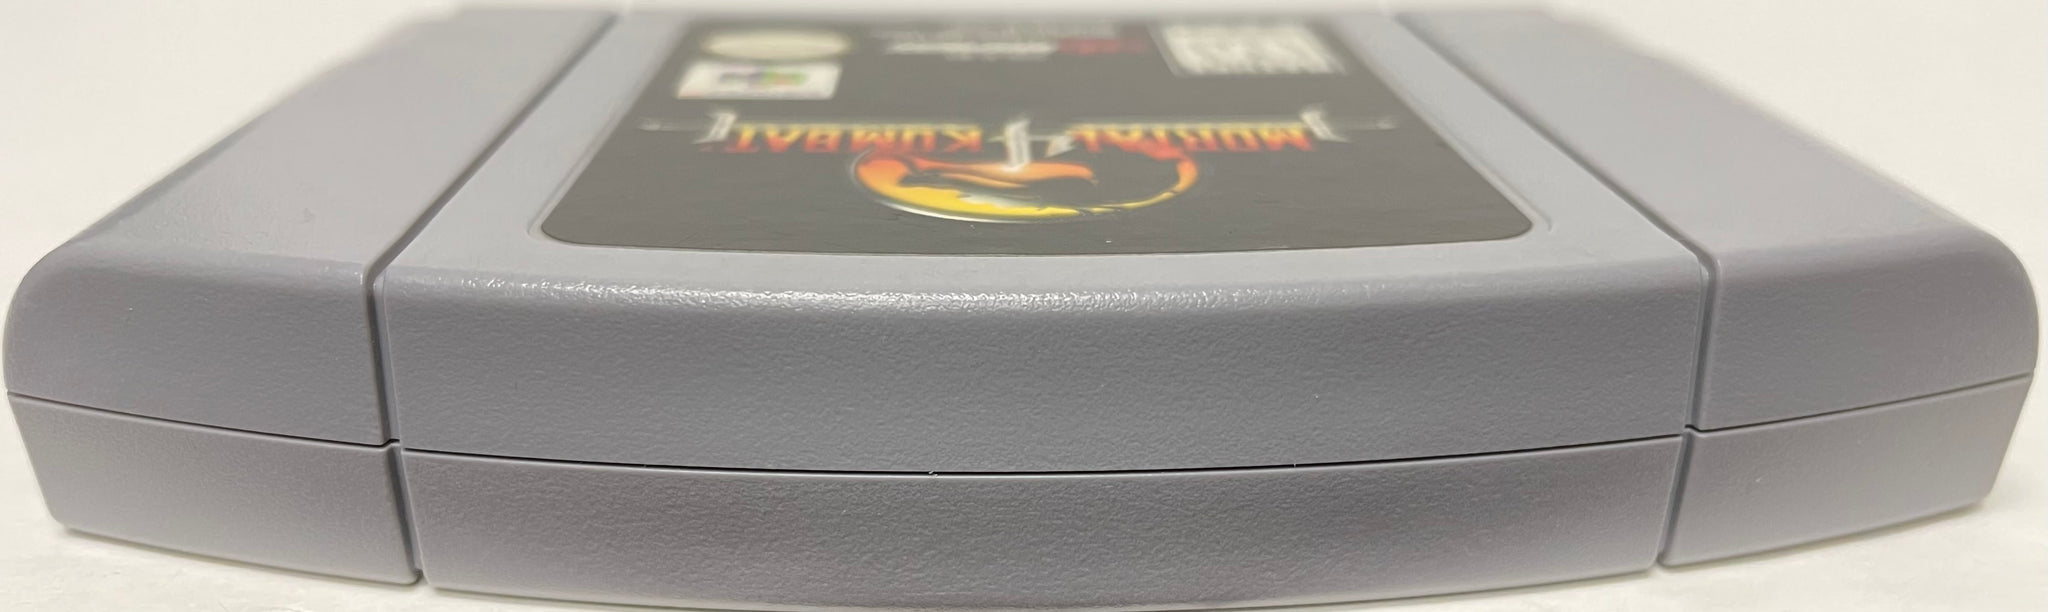 Mortal Kombat 4 MK4 (Nintendo 64 N64, 1998) Sealed!!!